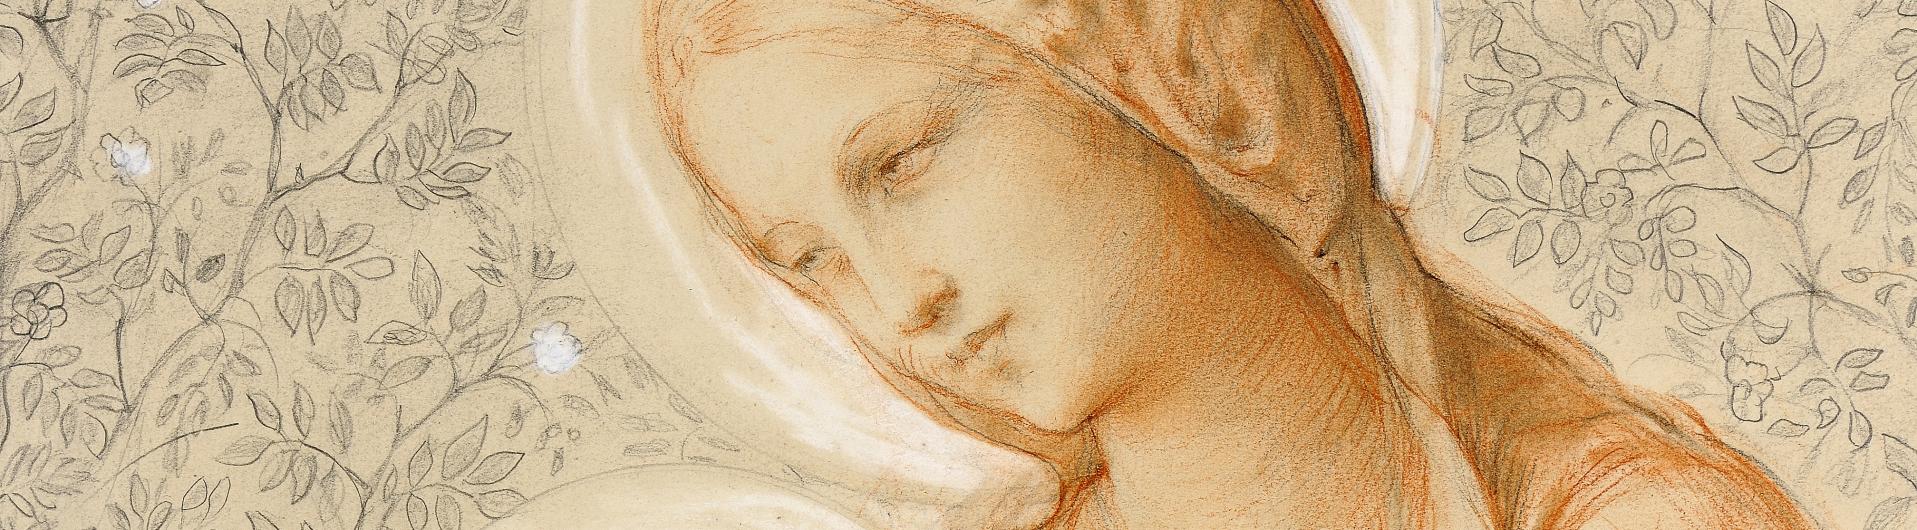 Janmot, Vierge à l'enfant, 1848-1850